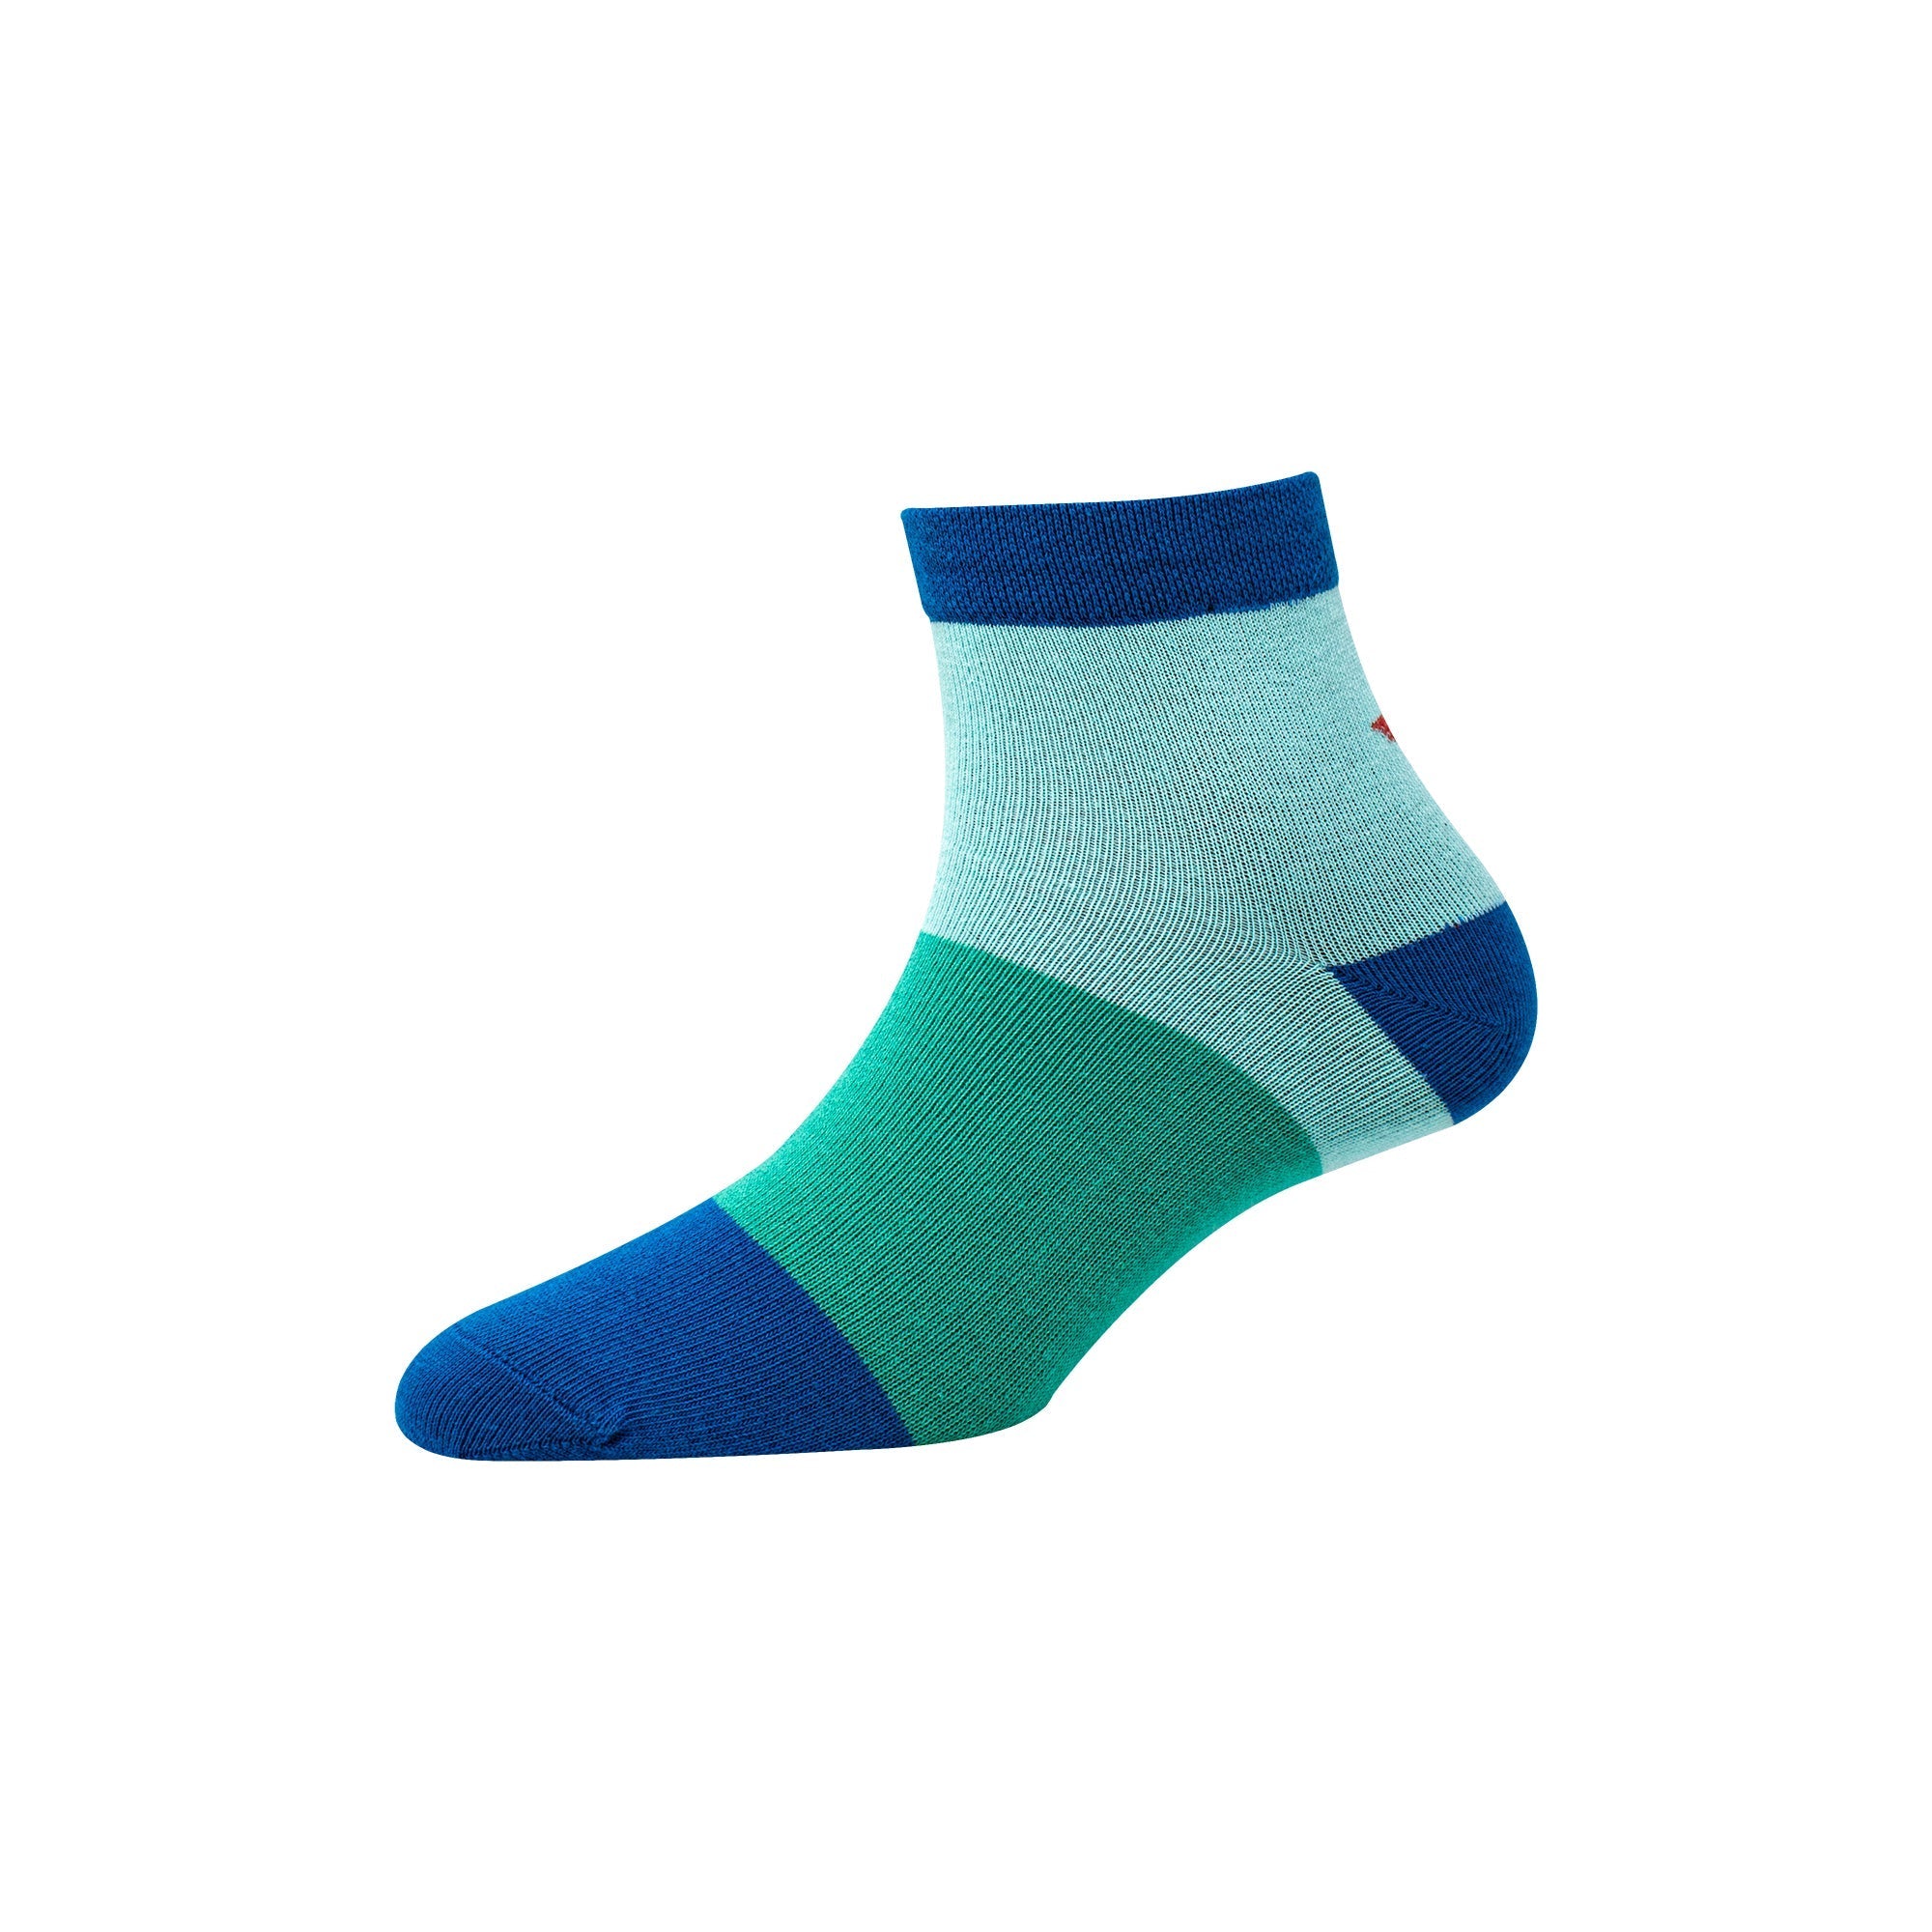 Women's YW-W1-4008 Ankle Colour Blocks Socks